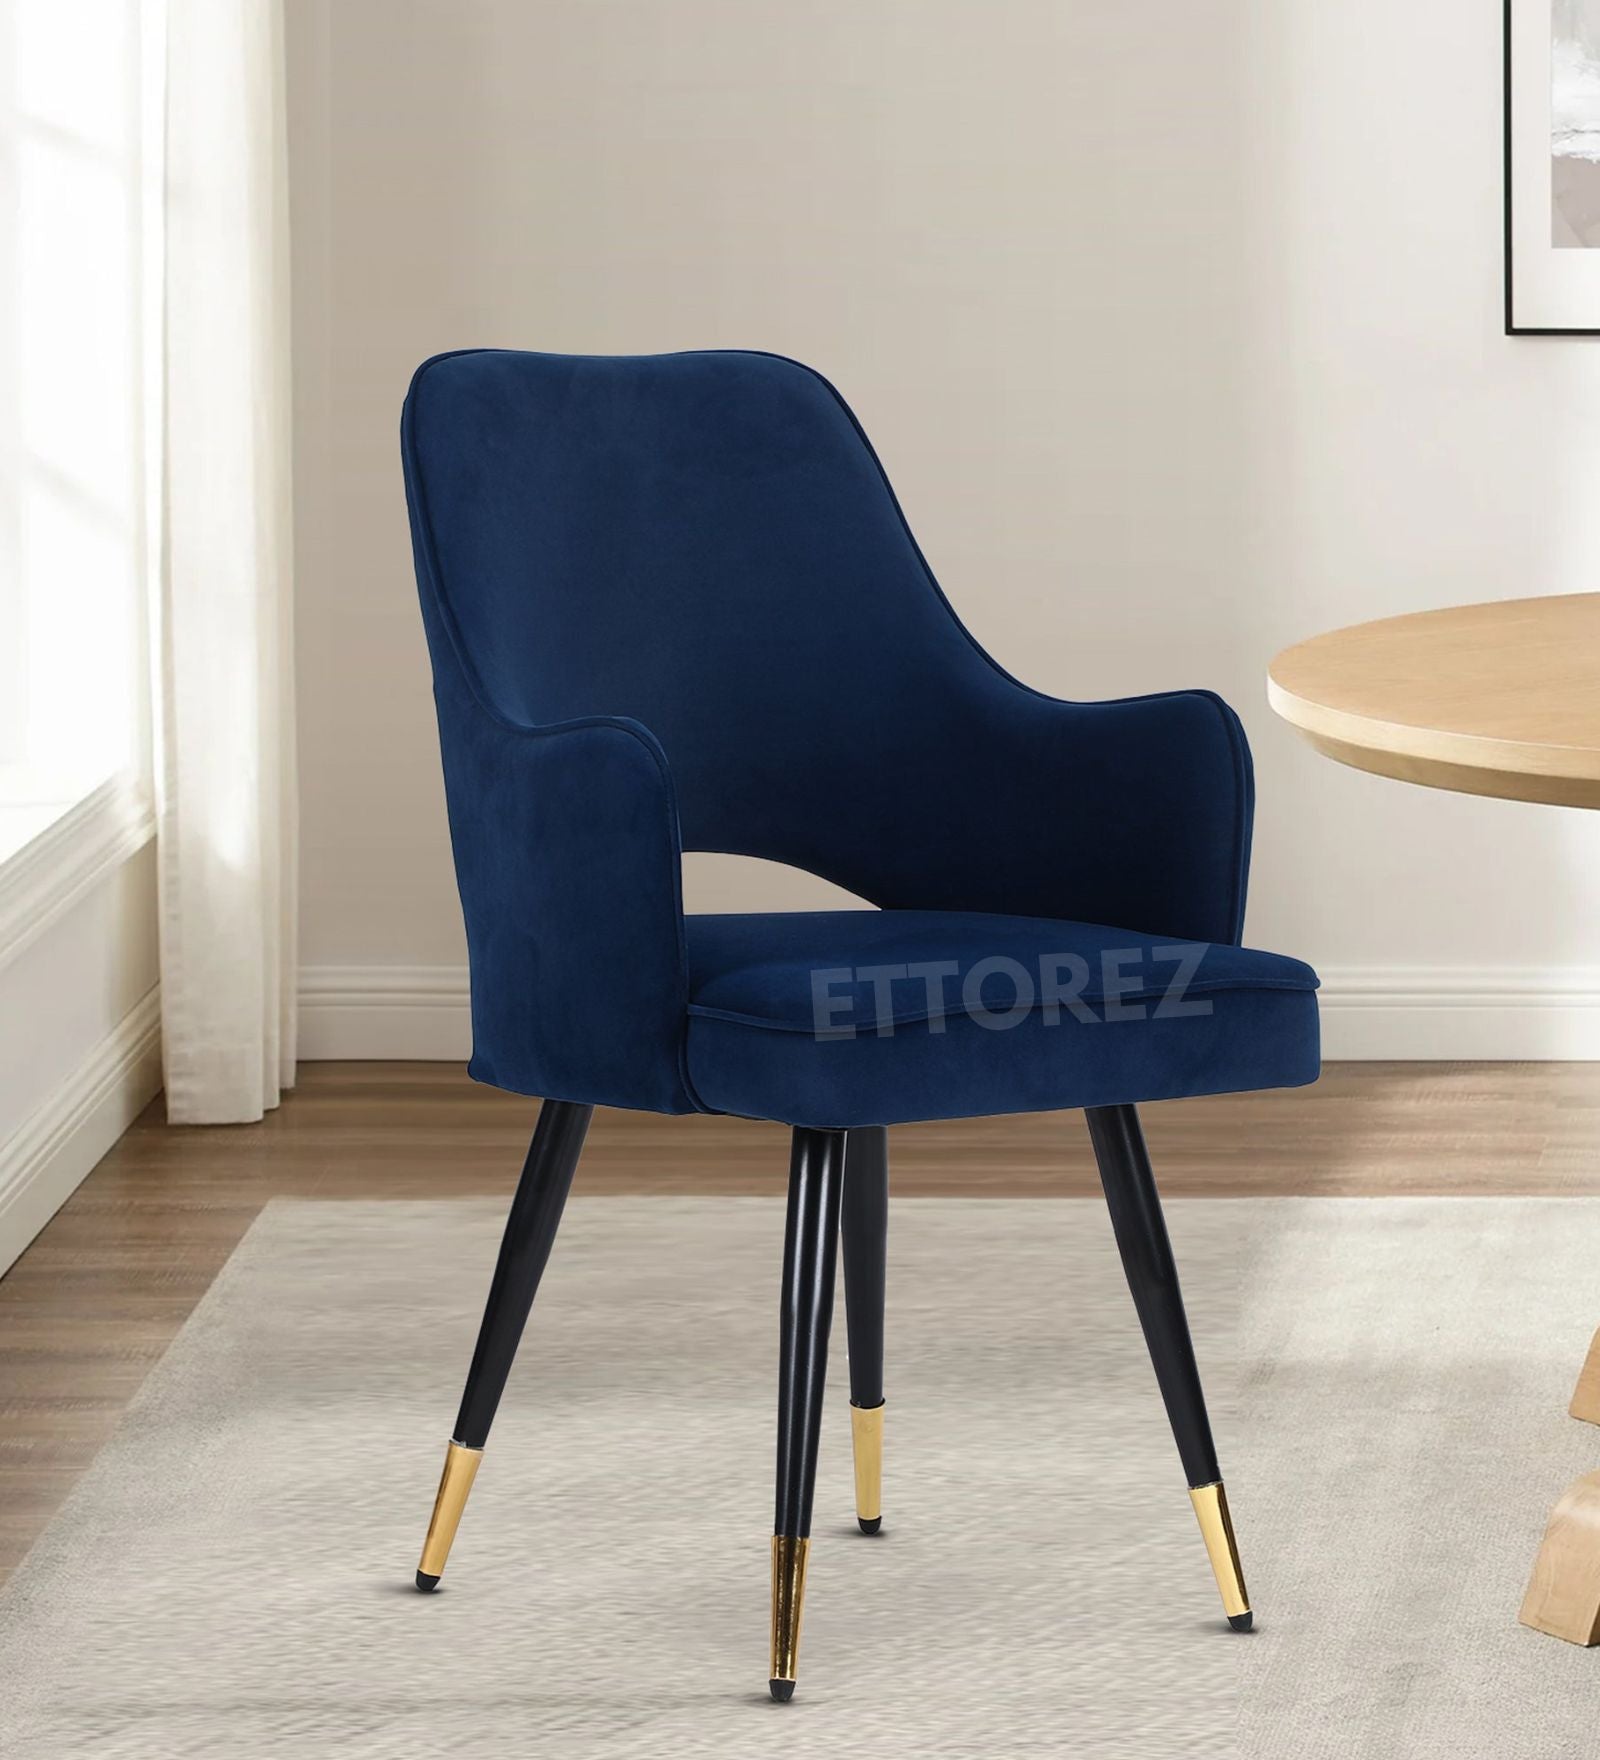 Ettorez ELEGANCE-BLUE Modern/Unique Bedroom Accent Chair